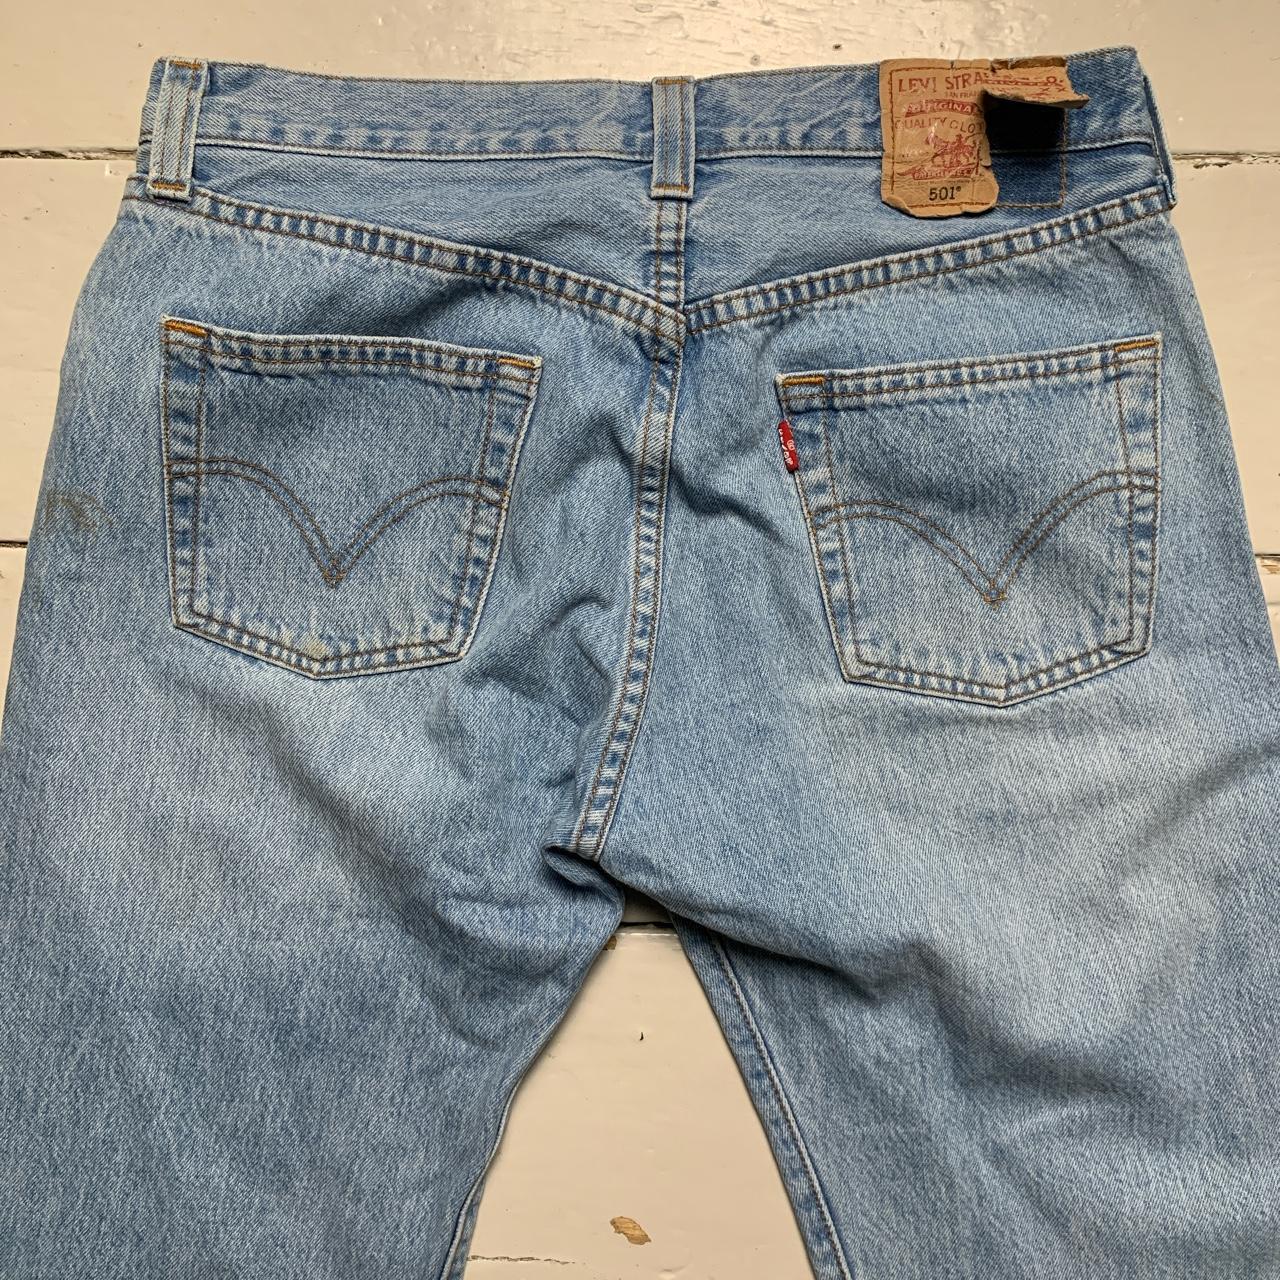 Levis 501 Light Blue Jeans